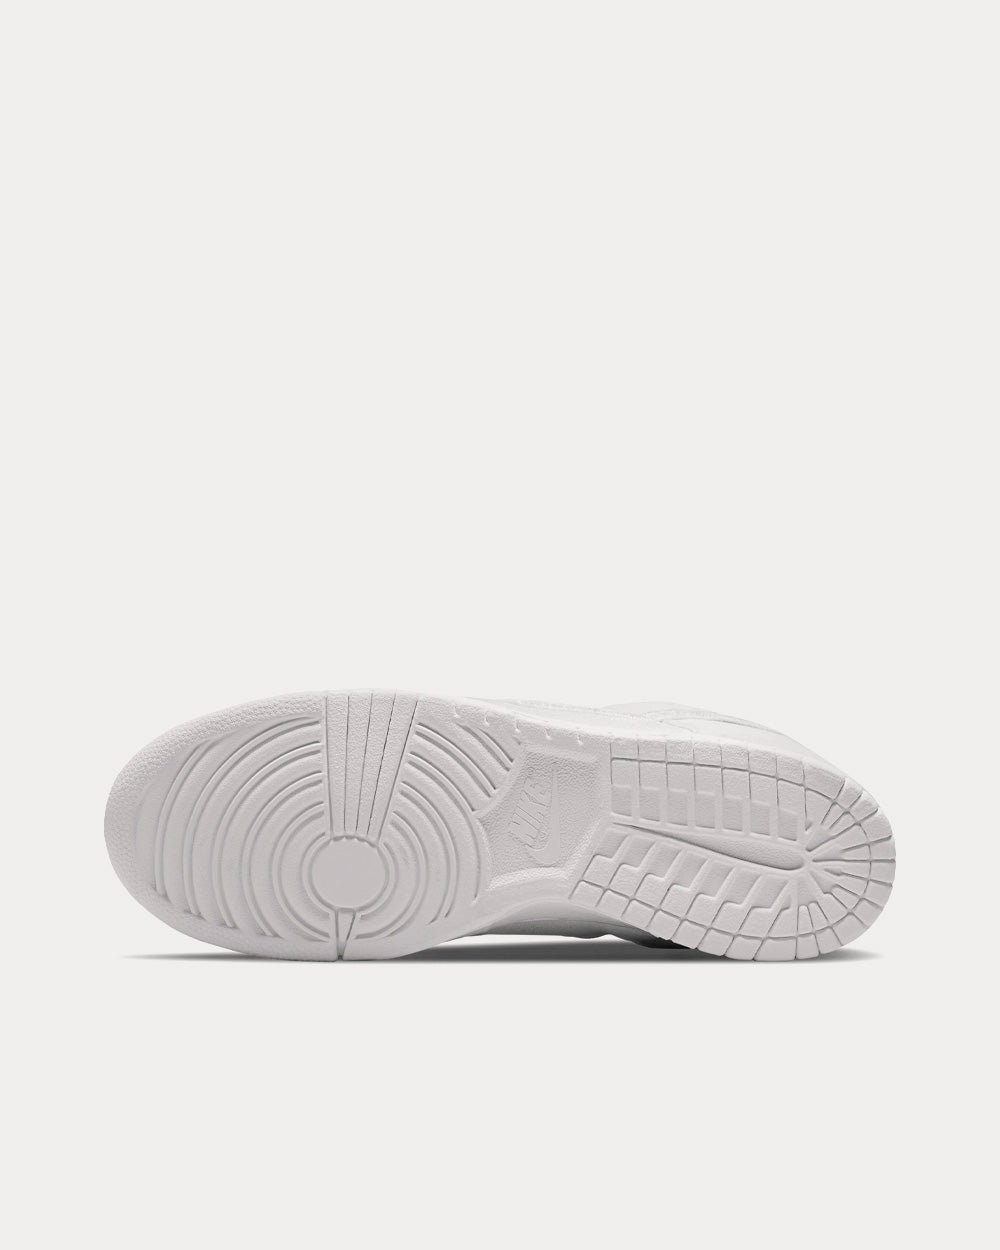 Nike x Comme des Garçons - Dunk Low Velvet White Low Top Sneakers